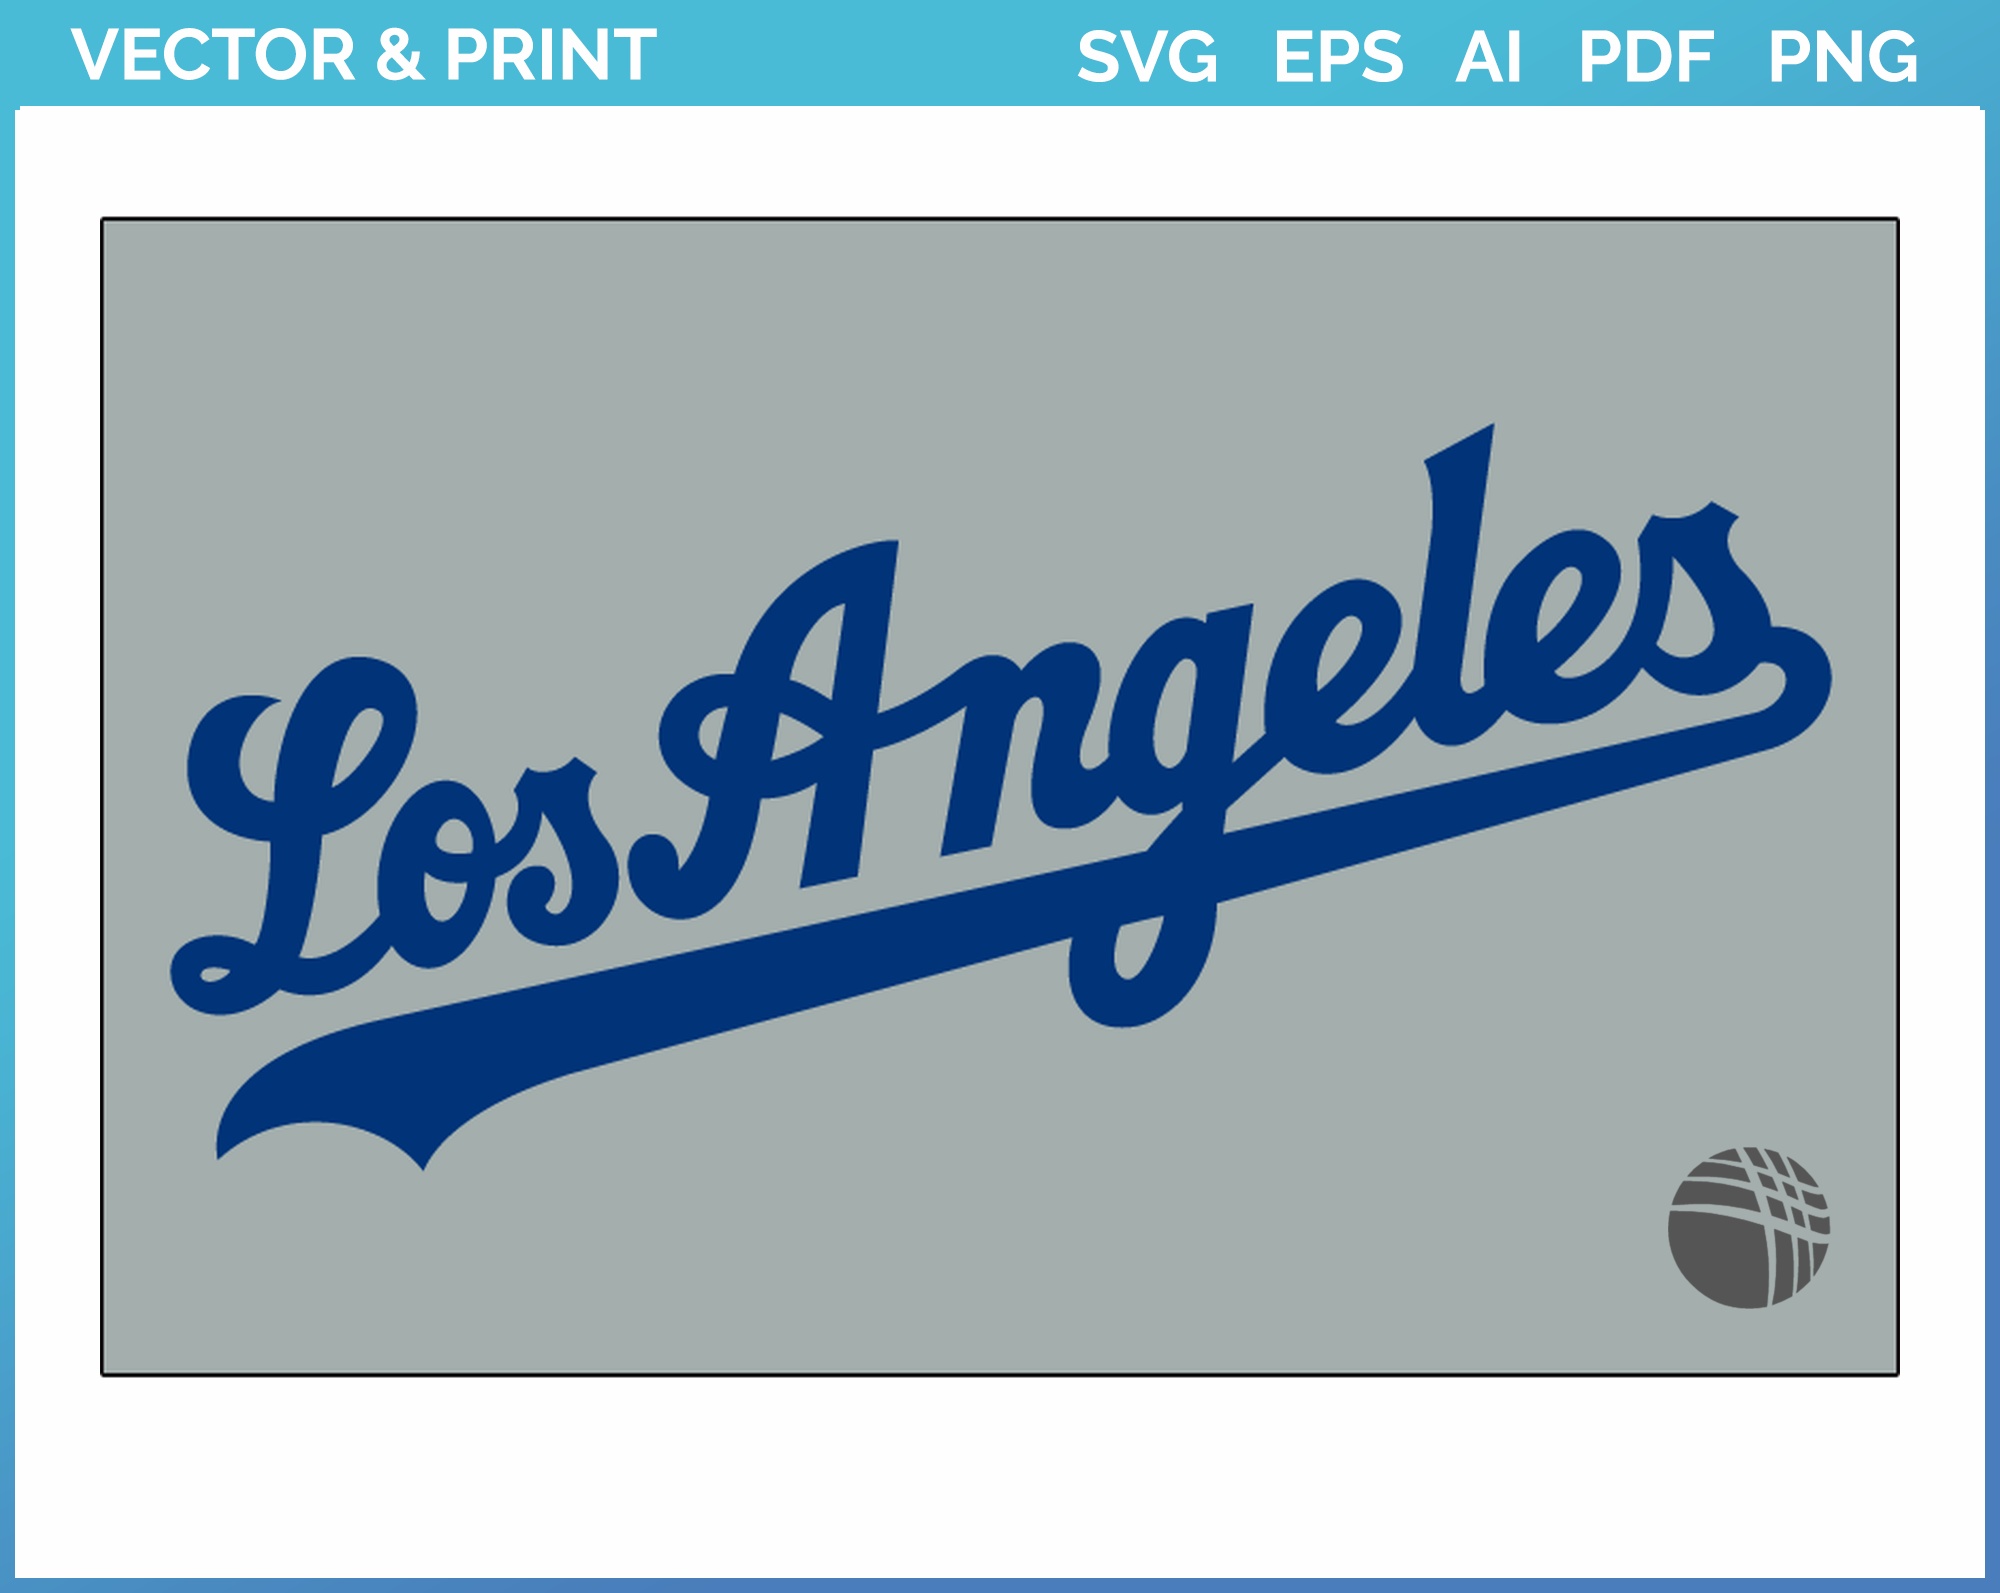 Dodgers SVG Logo